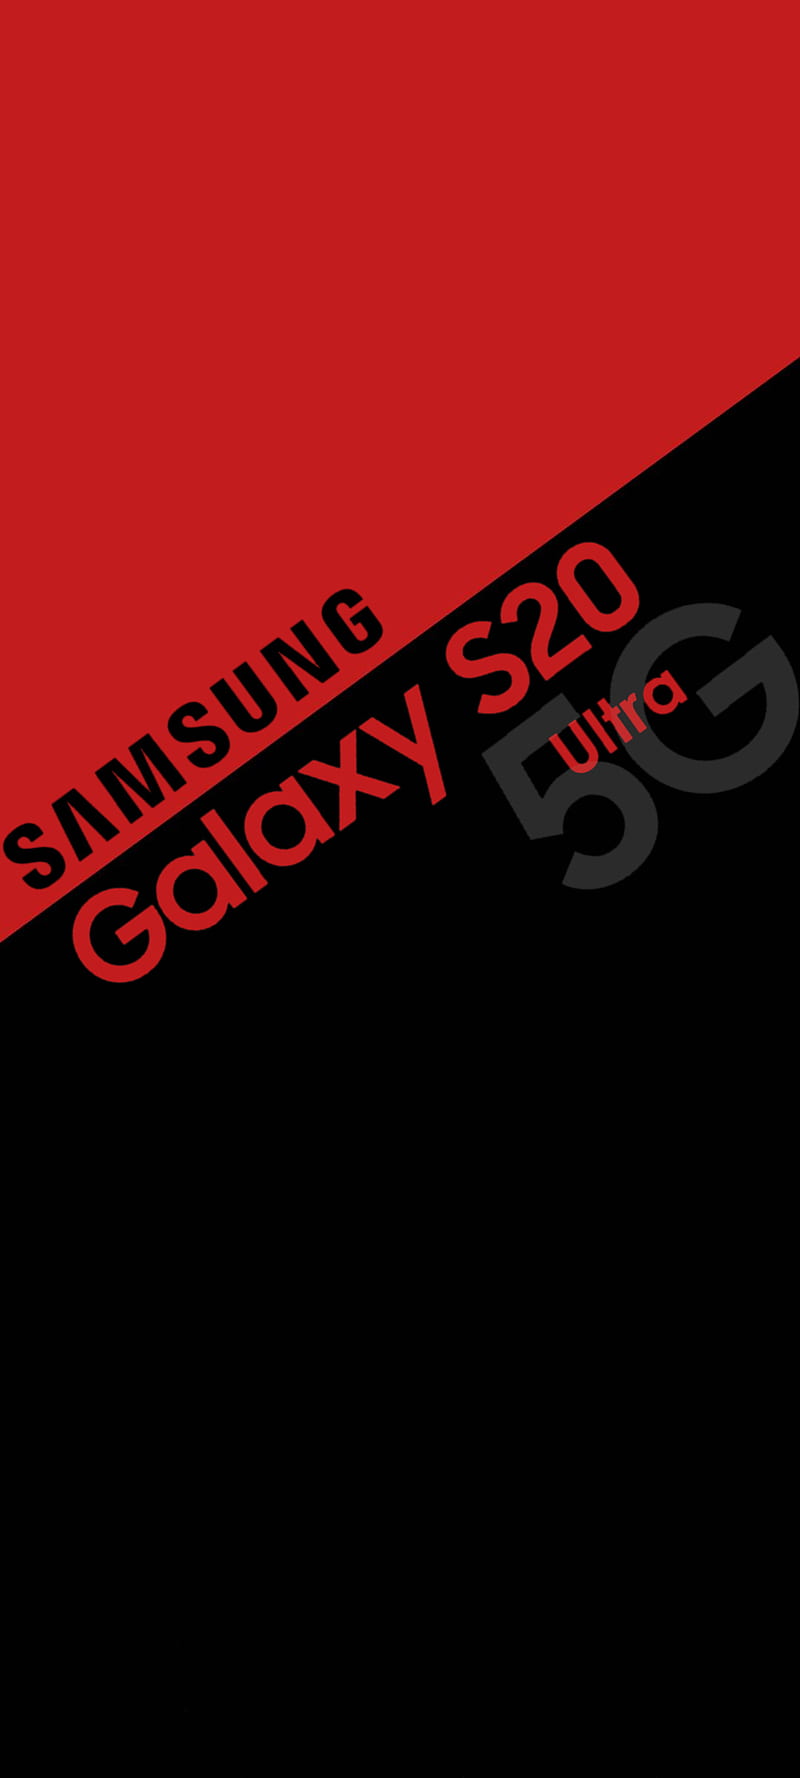 Điện thoại HD: S20 Ultra, Galaxy, logo Samsung, khóa màn hình, ánh sáng - Đây là chiếc điện thoại HD được trang bị đầy đủ những tính năng độc đáo và tiên tiến nhất của hãng Samsung. Với khả năng khóa và mở máy bằng ánh sáng, cùng logo Samsung phong cách và sang trọng, chắc chắn sẽ khiến bạn mê mẩn.